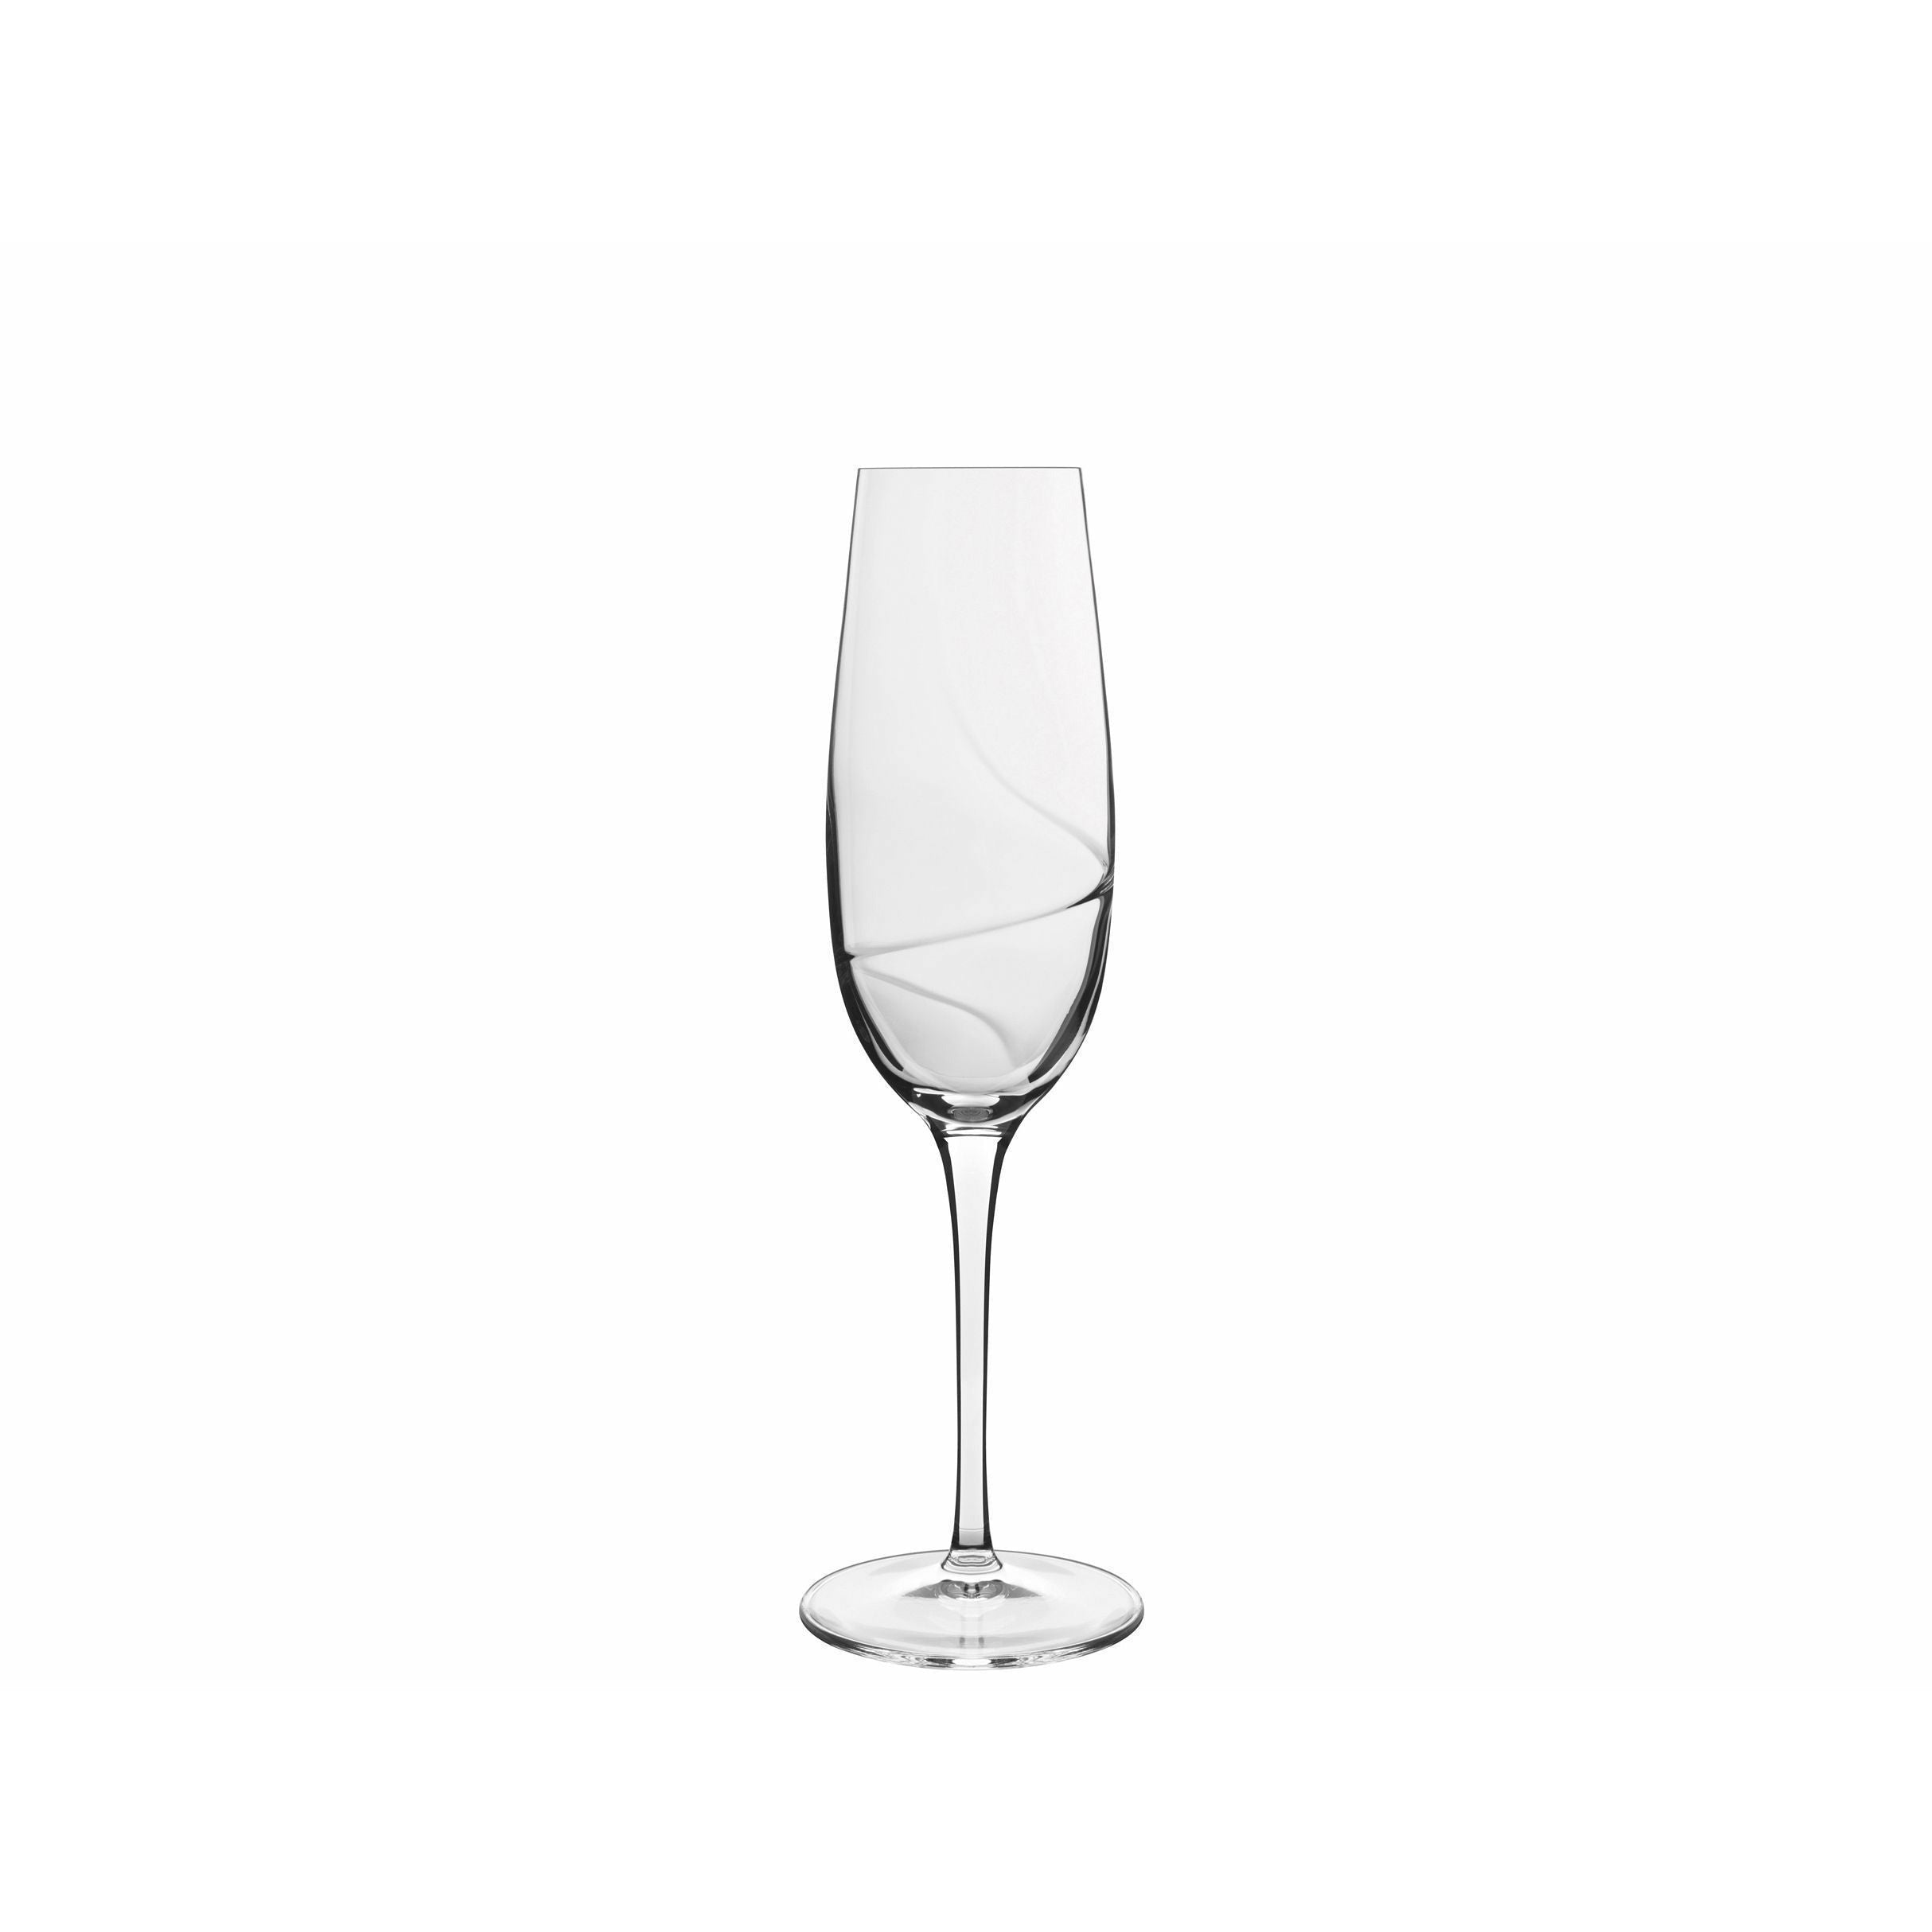 Luigi Bormioli Aero Champagneglas, 6 Stk.